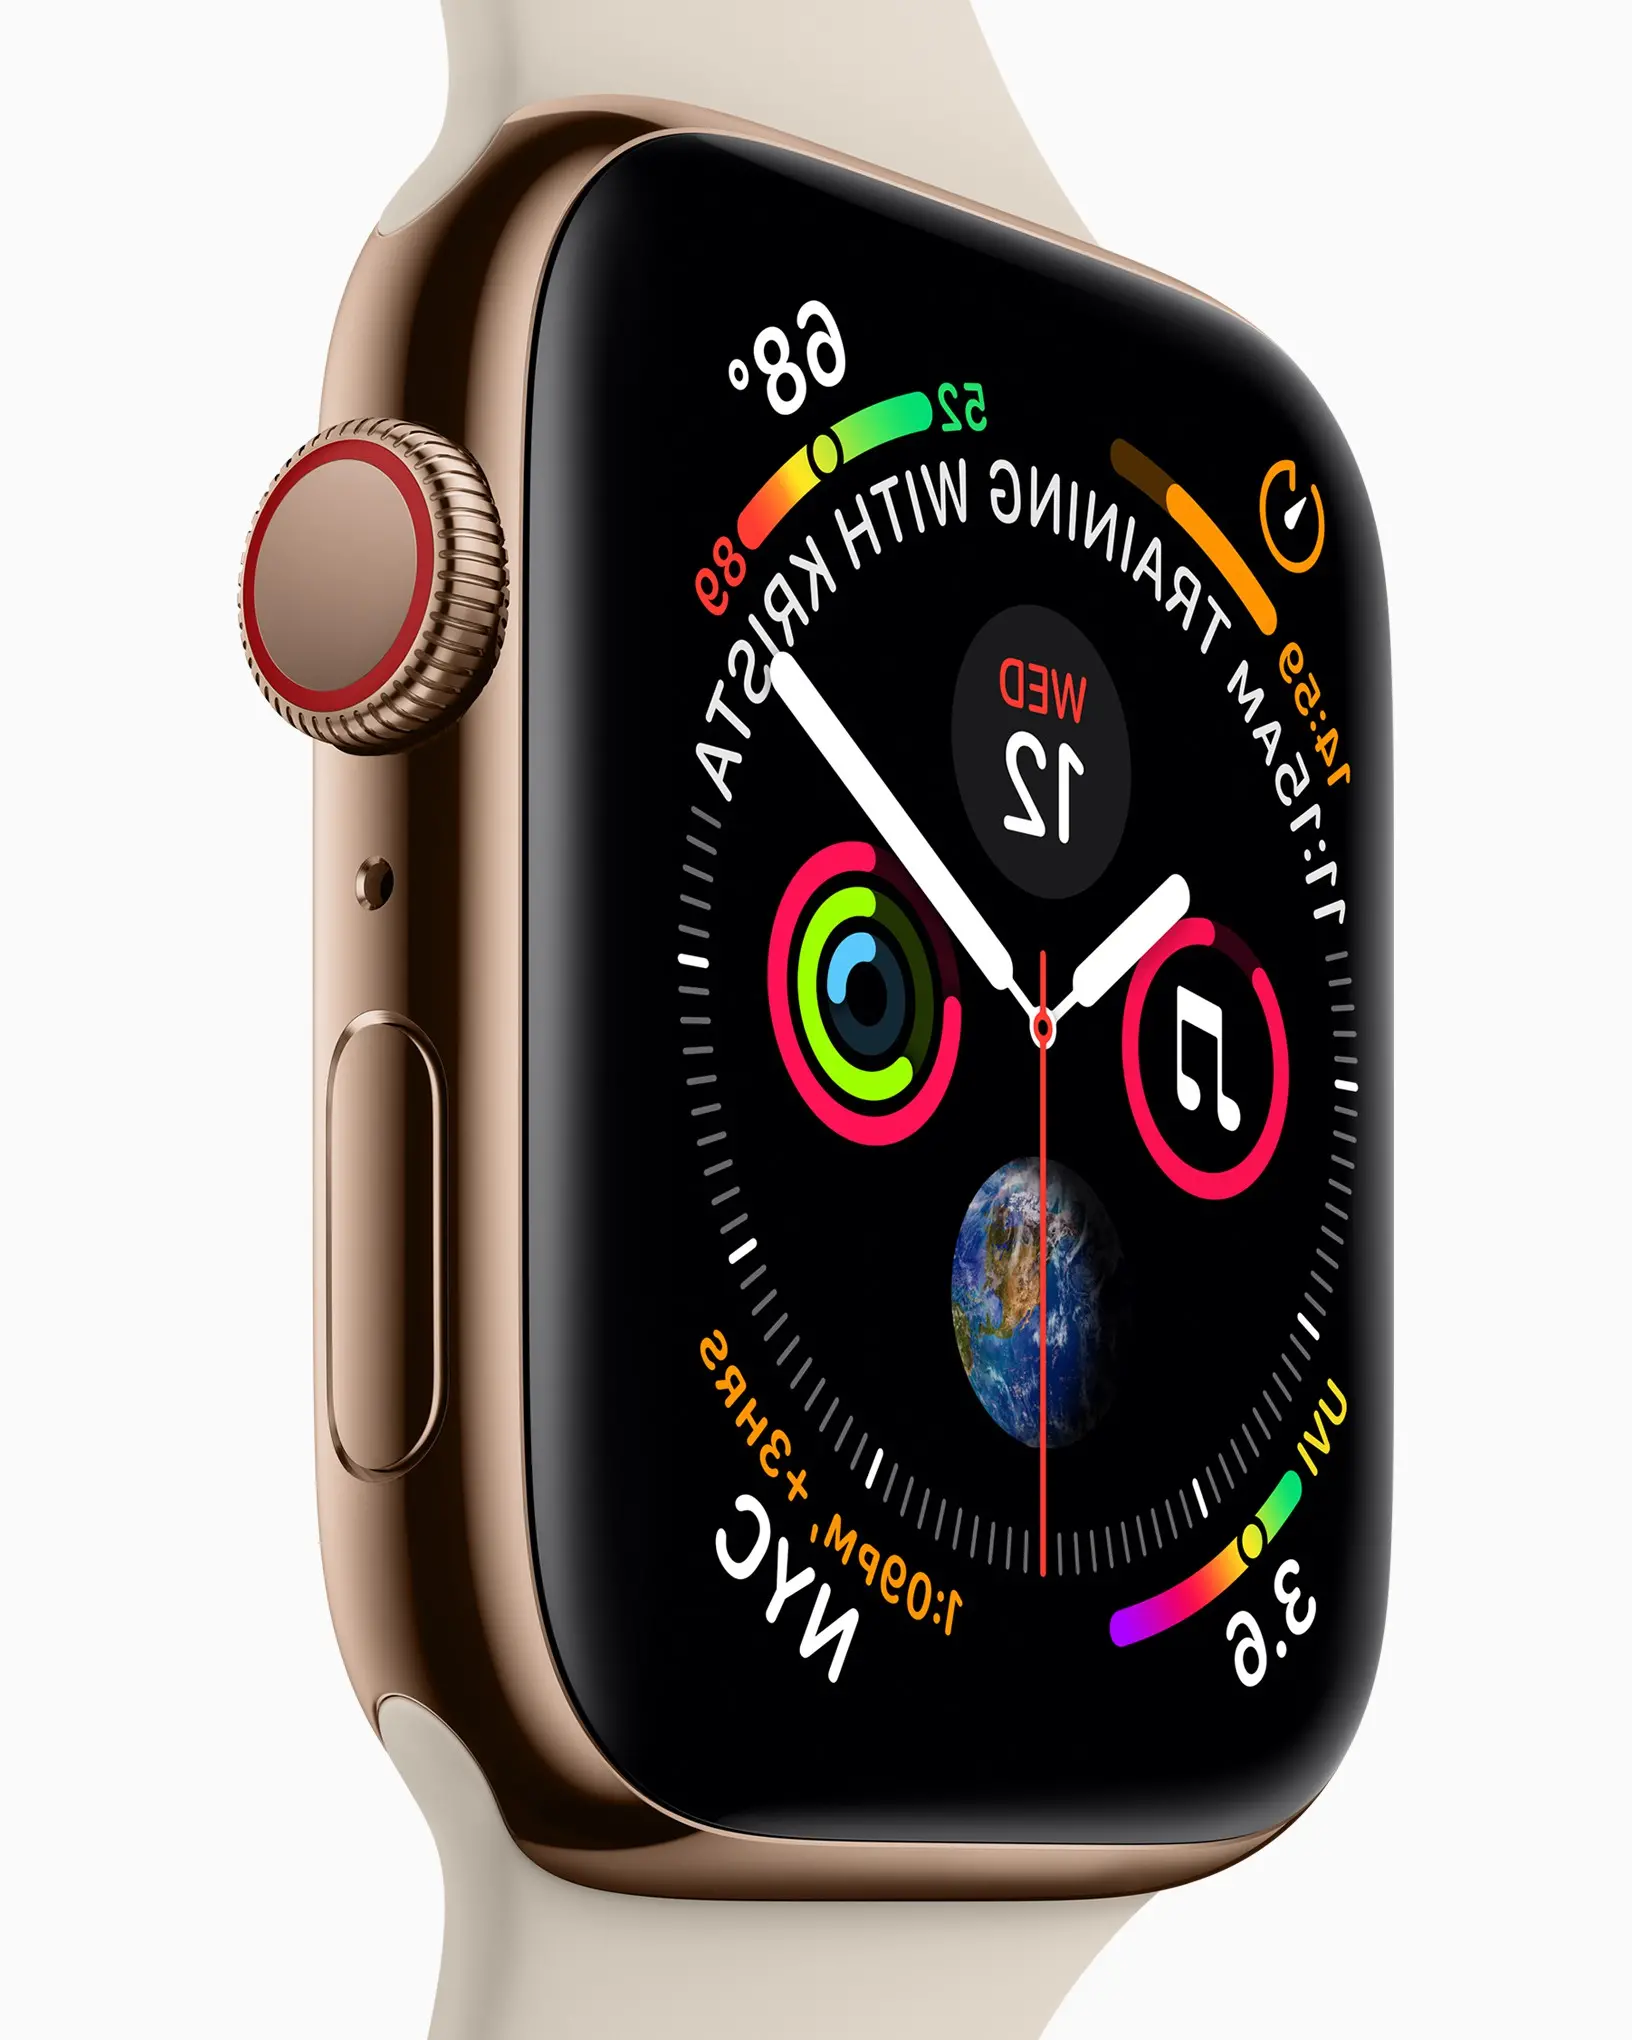 Apple Watch Series 4 diluncurkan: layar OLED 35% lebih besar, wallpaper animasi yang mengeluarkan asap, gambar EKG, deteksi jatuh tetapi baterainya sama